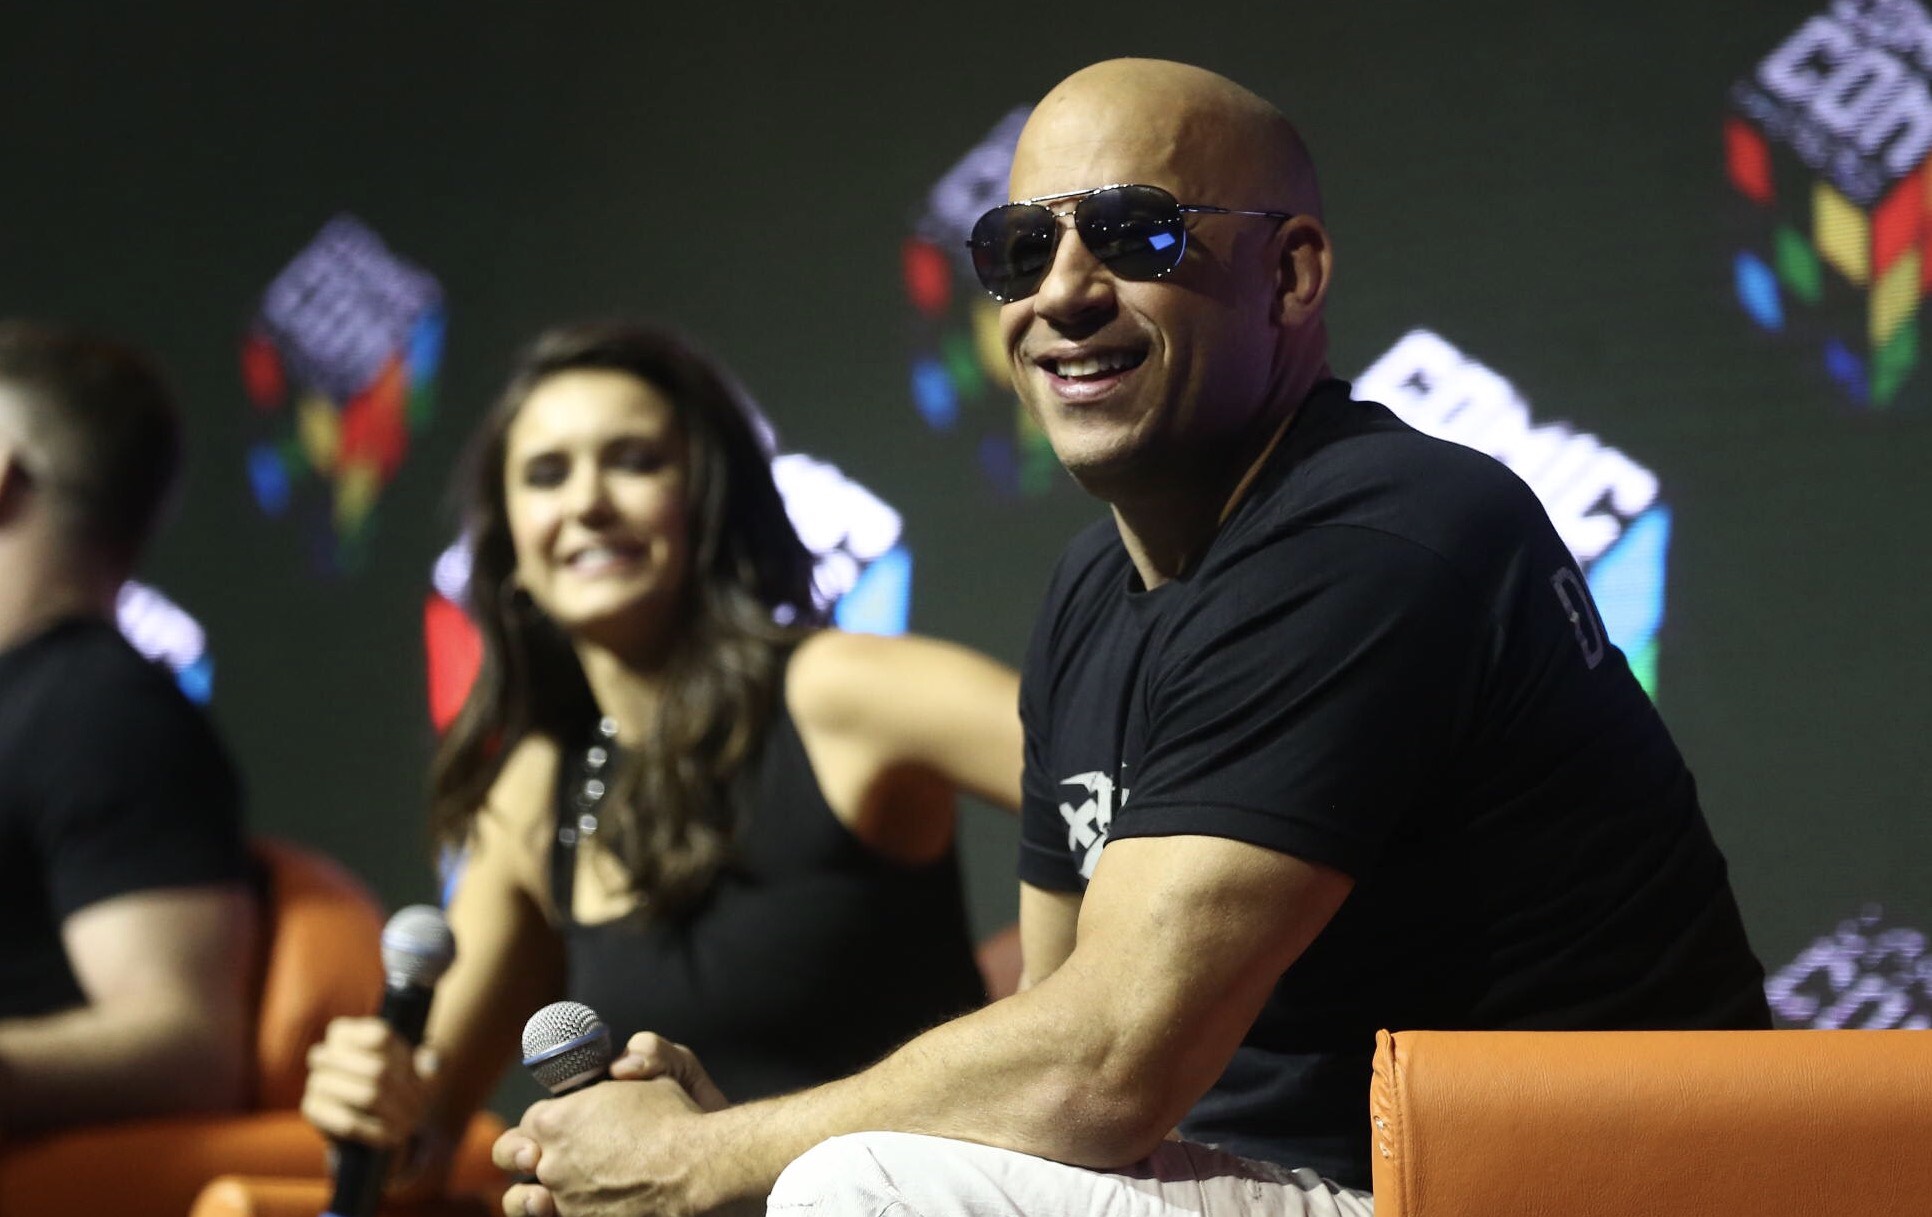 Nina Dobrev e Vin Diesel na Comic Con, em São Paulo, nesta quinta-feira, 1º. Eles participaram de um bate-papo com fãs